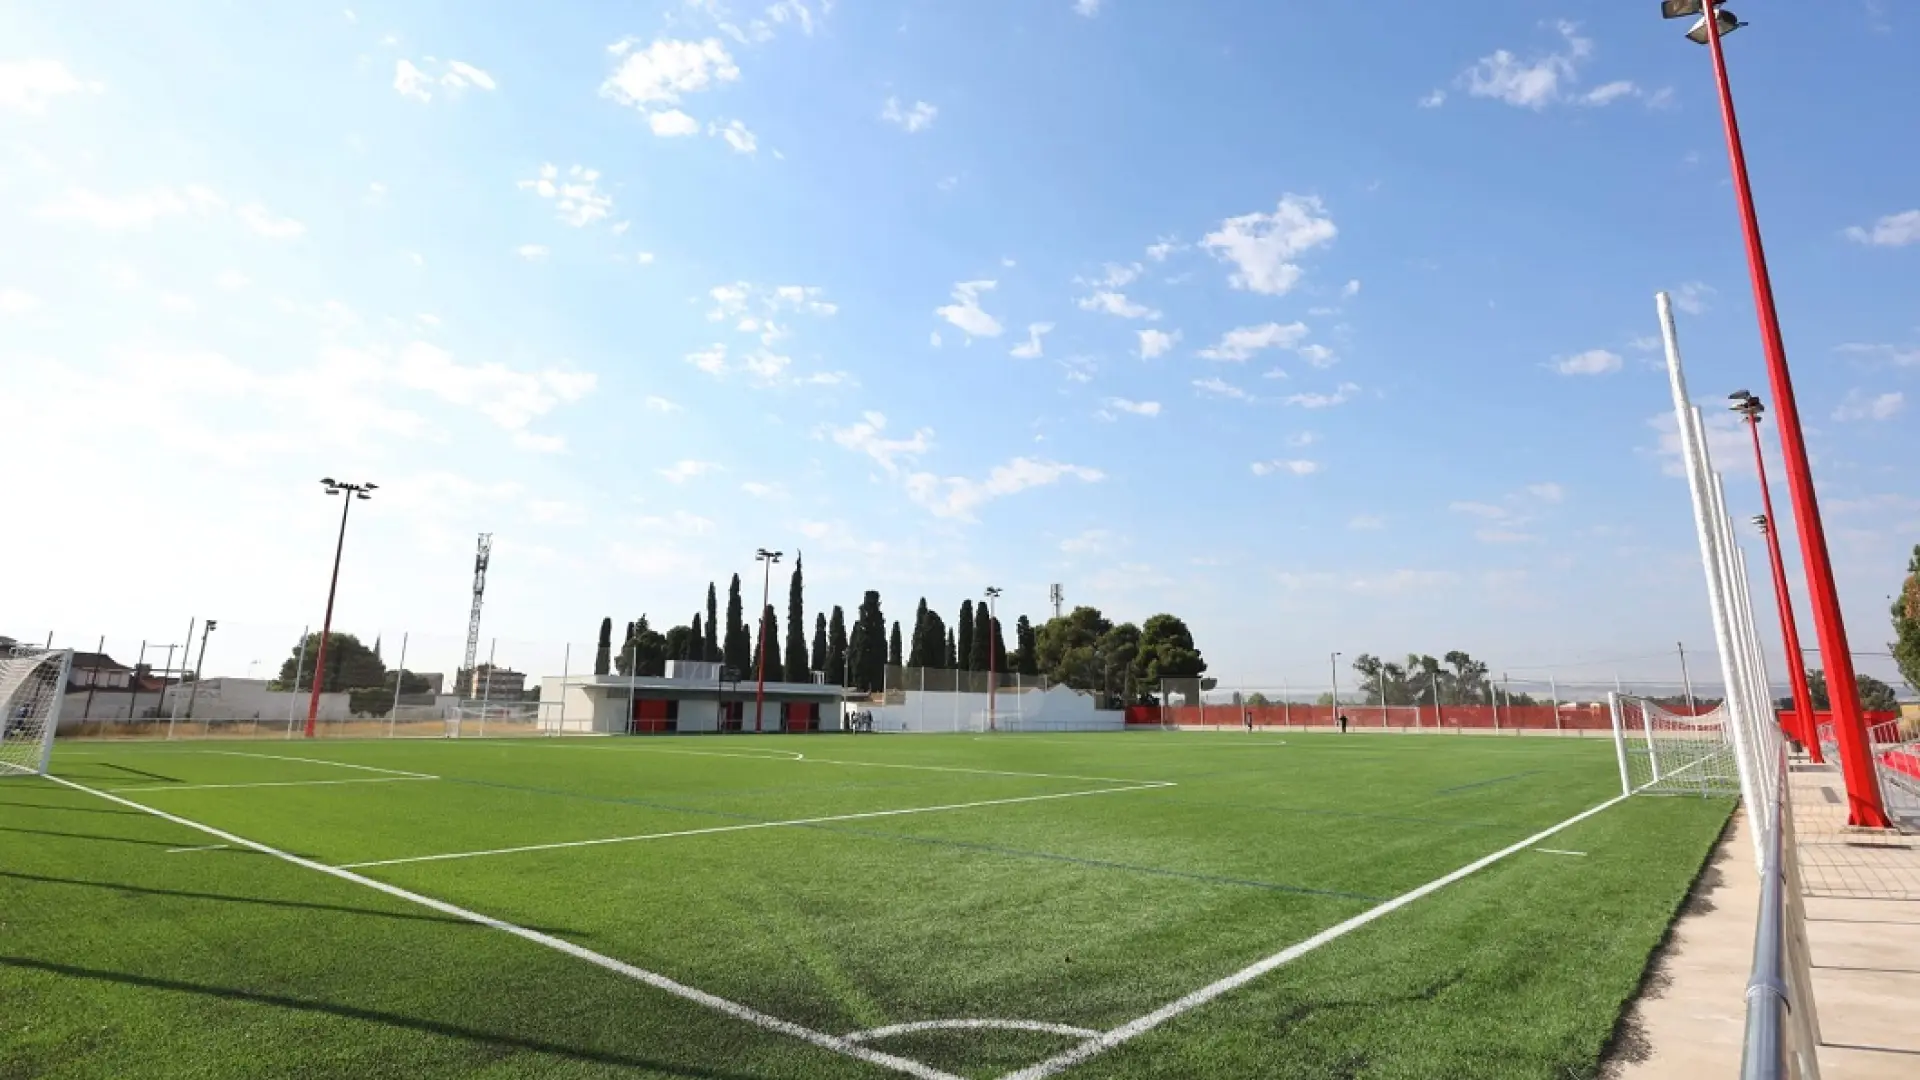 Para la reforma del campo de fútbol de Garrapinillos la DPZ puso 400.000 euros.